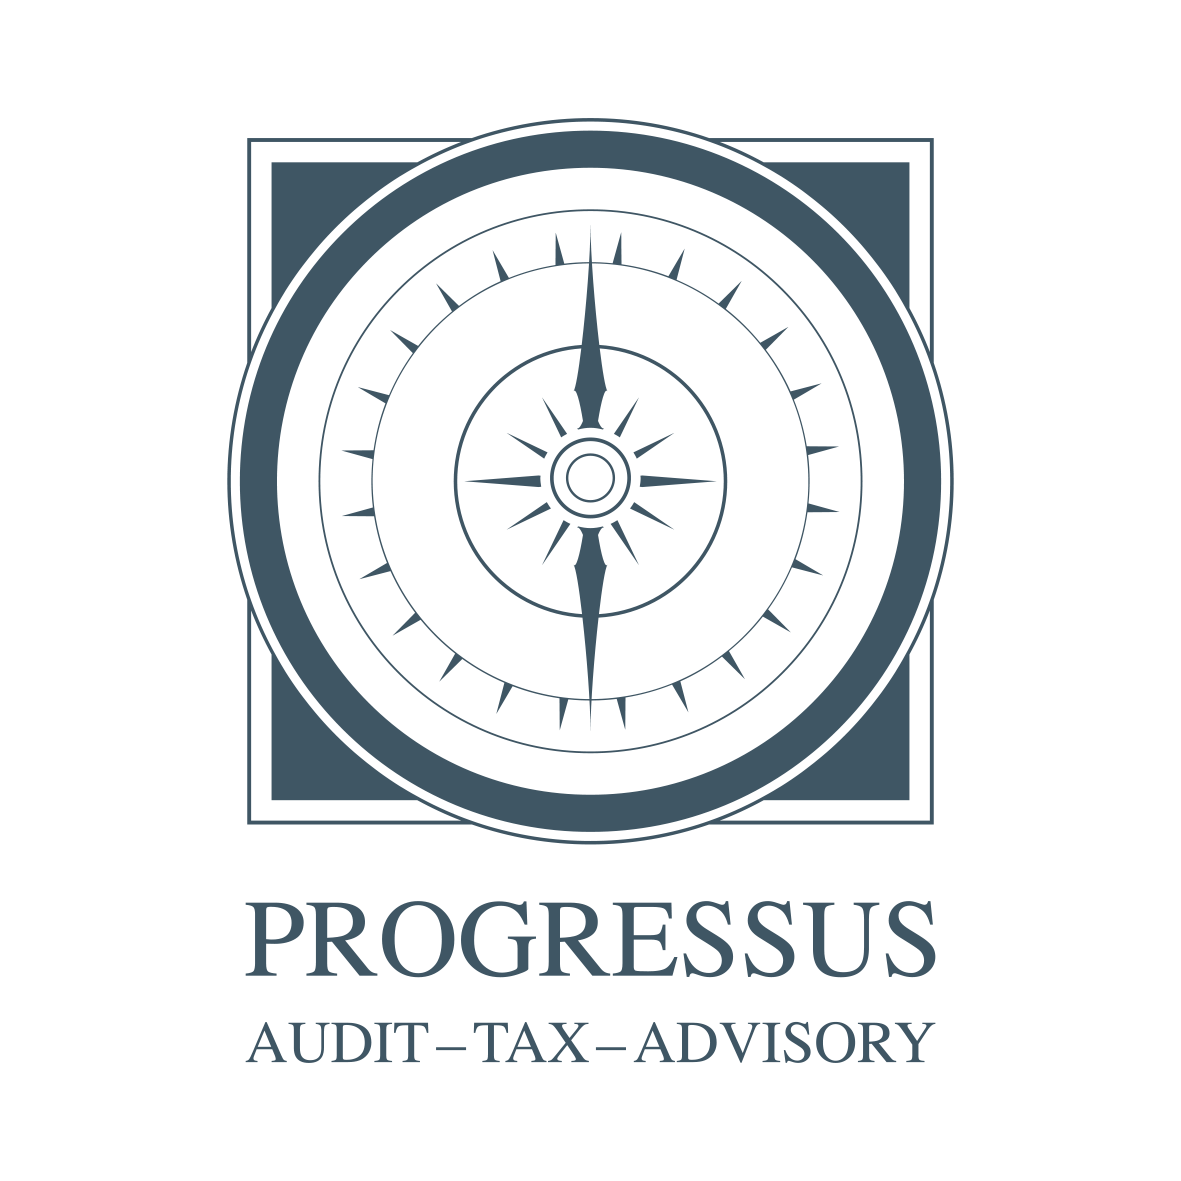 PGR Progressus Audit Ltd